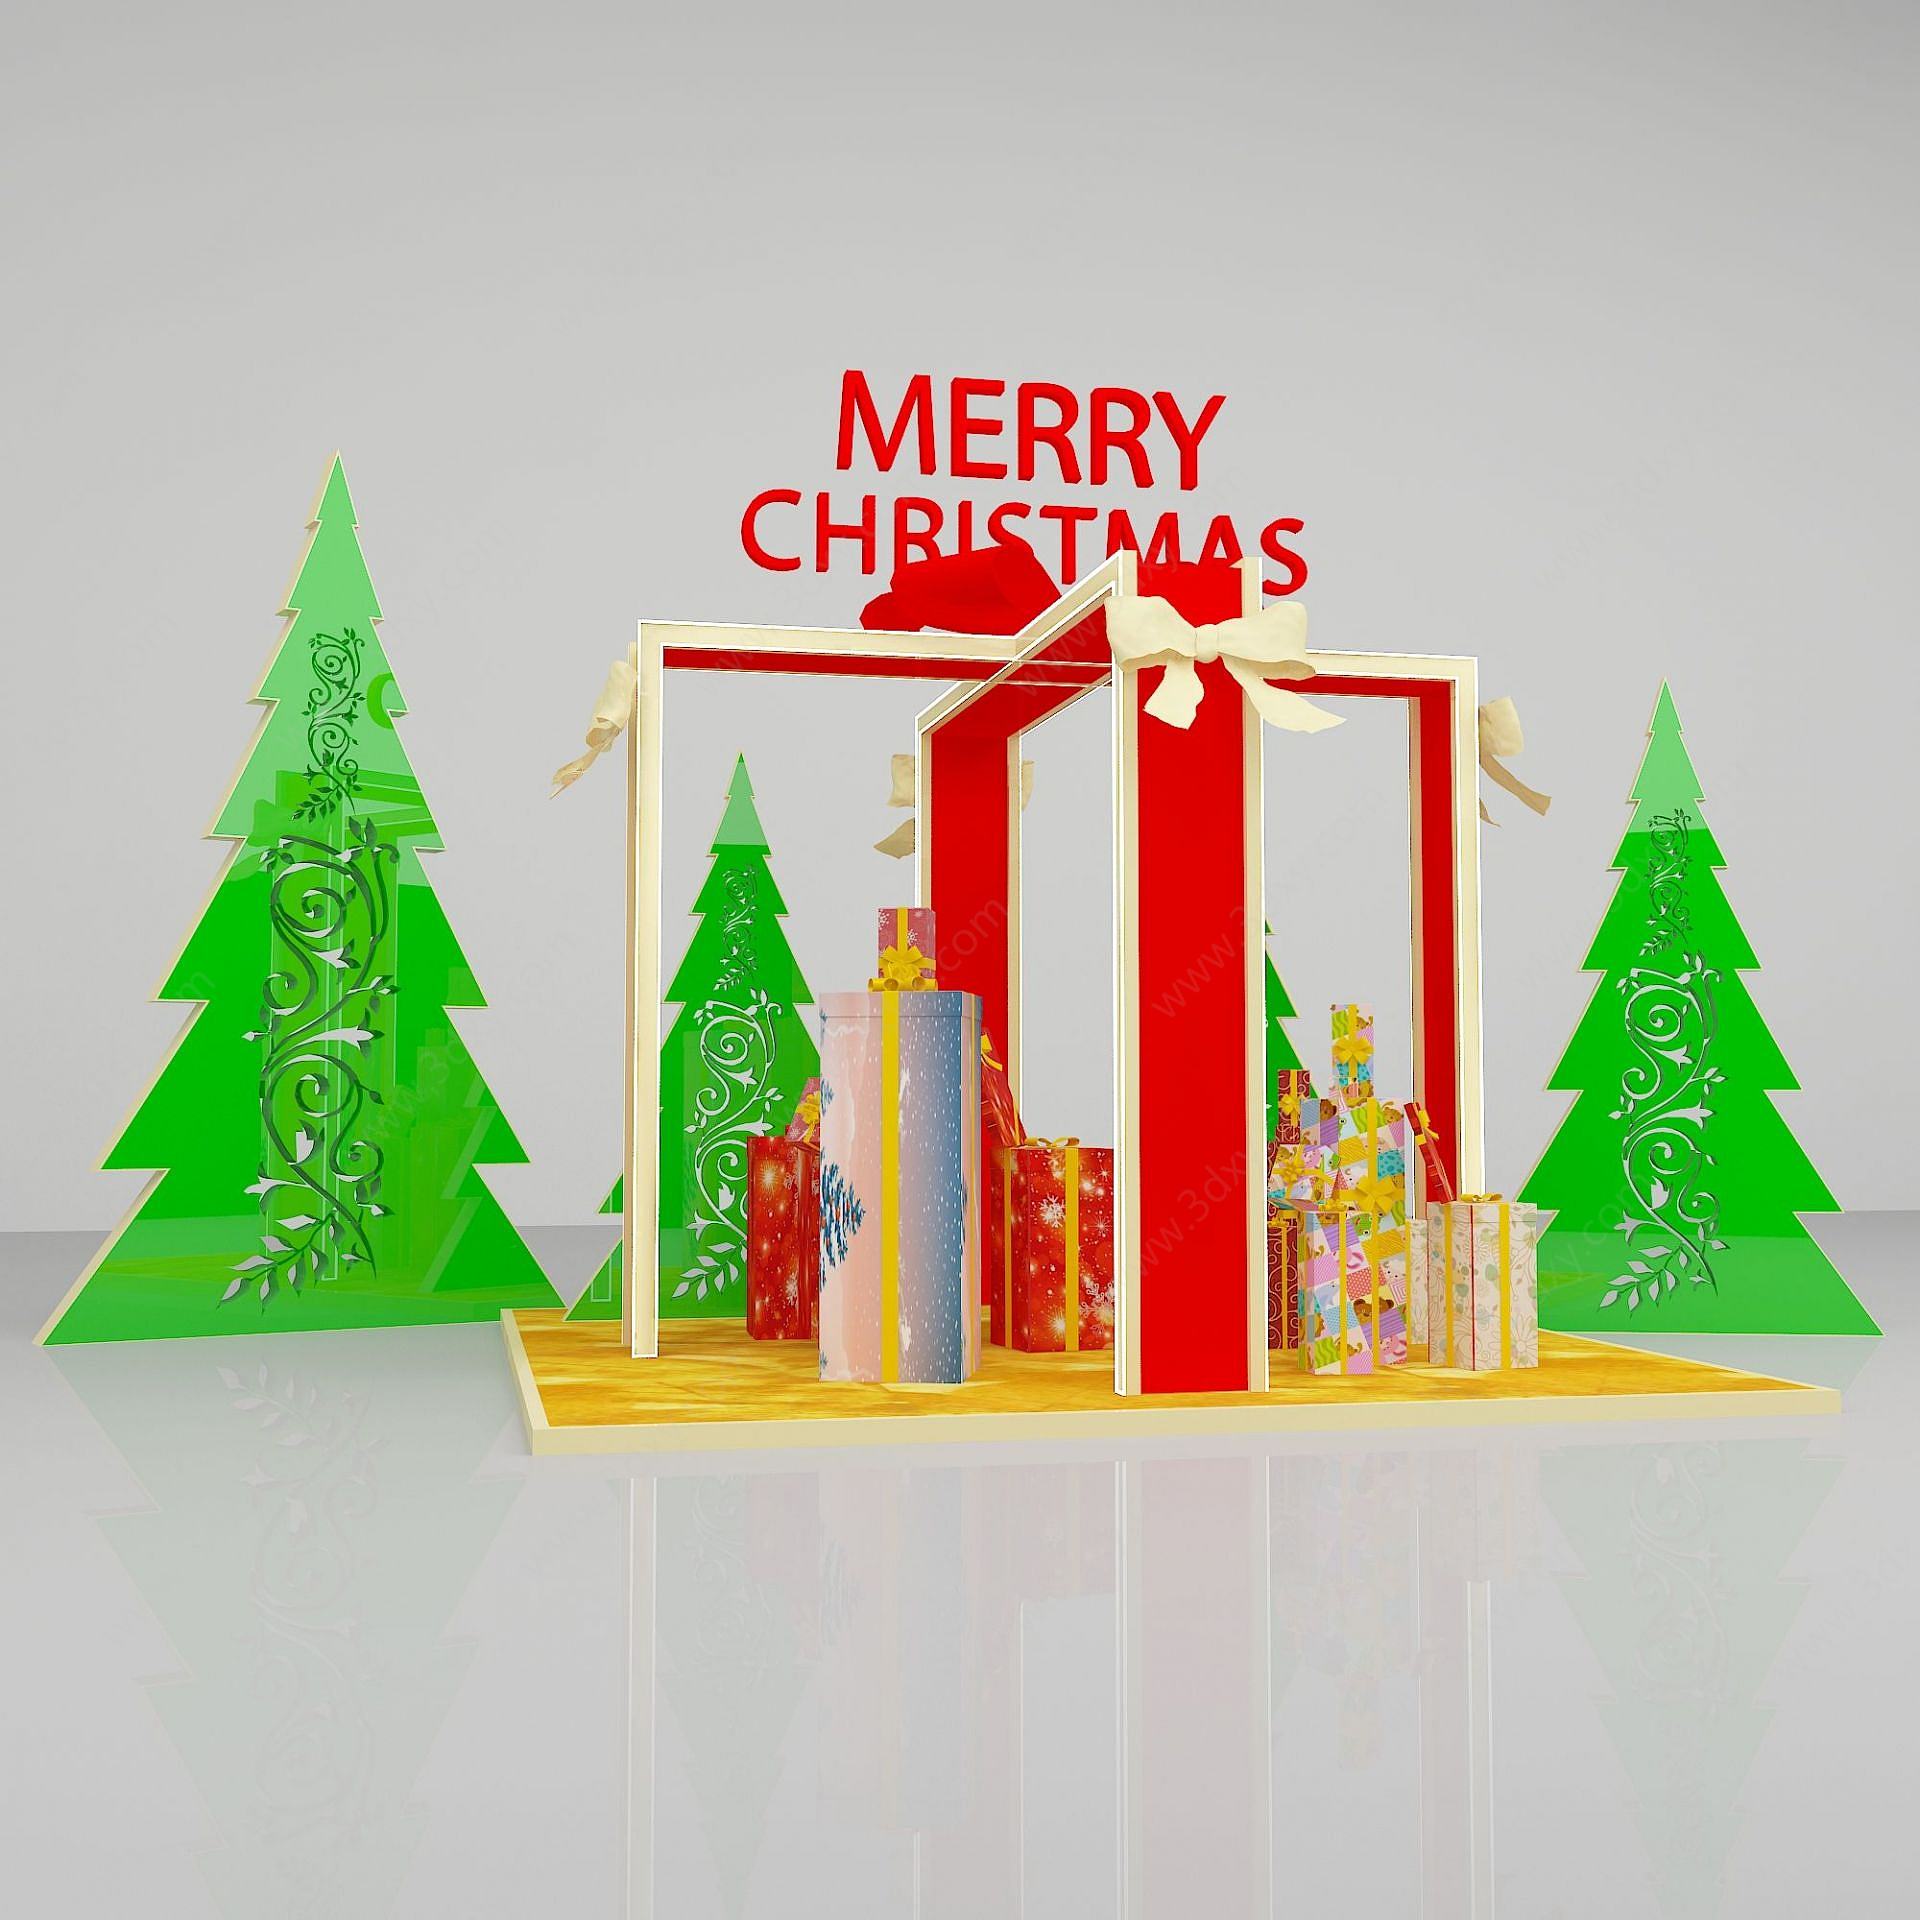 圣诞节商场展示3D模型